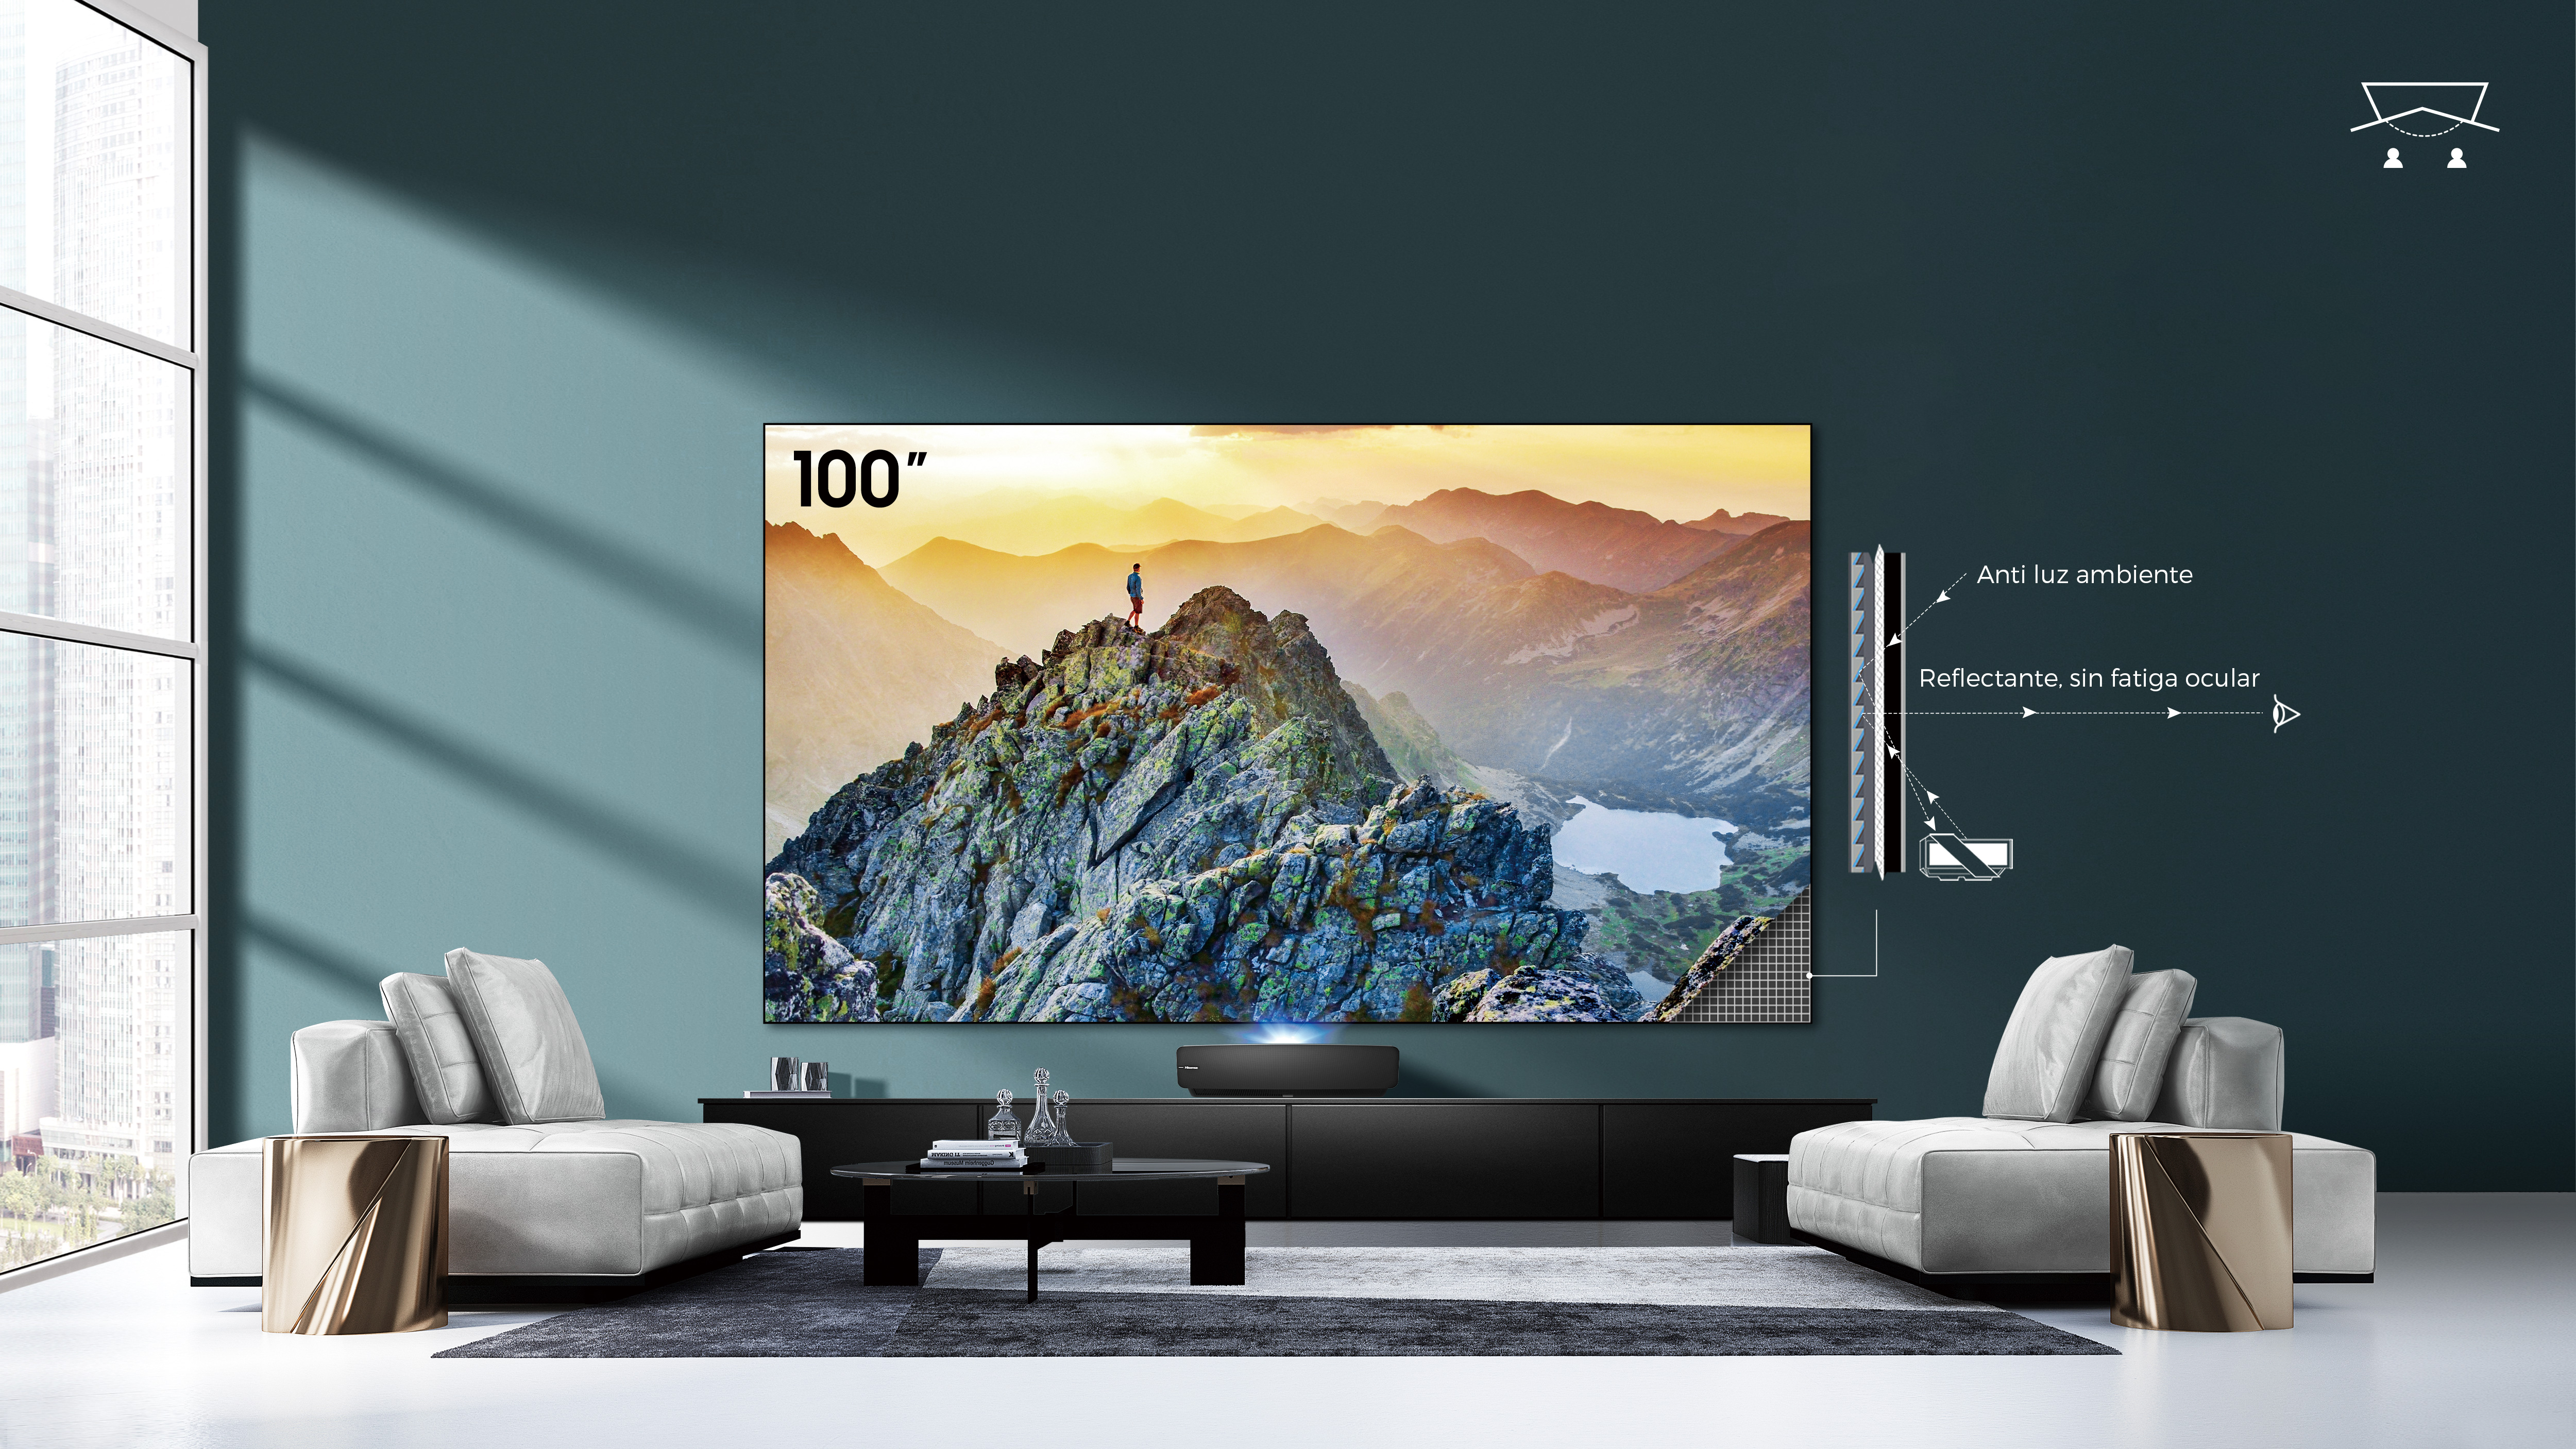 Laser TV pantalla con rechazo de luz ambiente Hisense